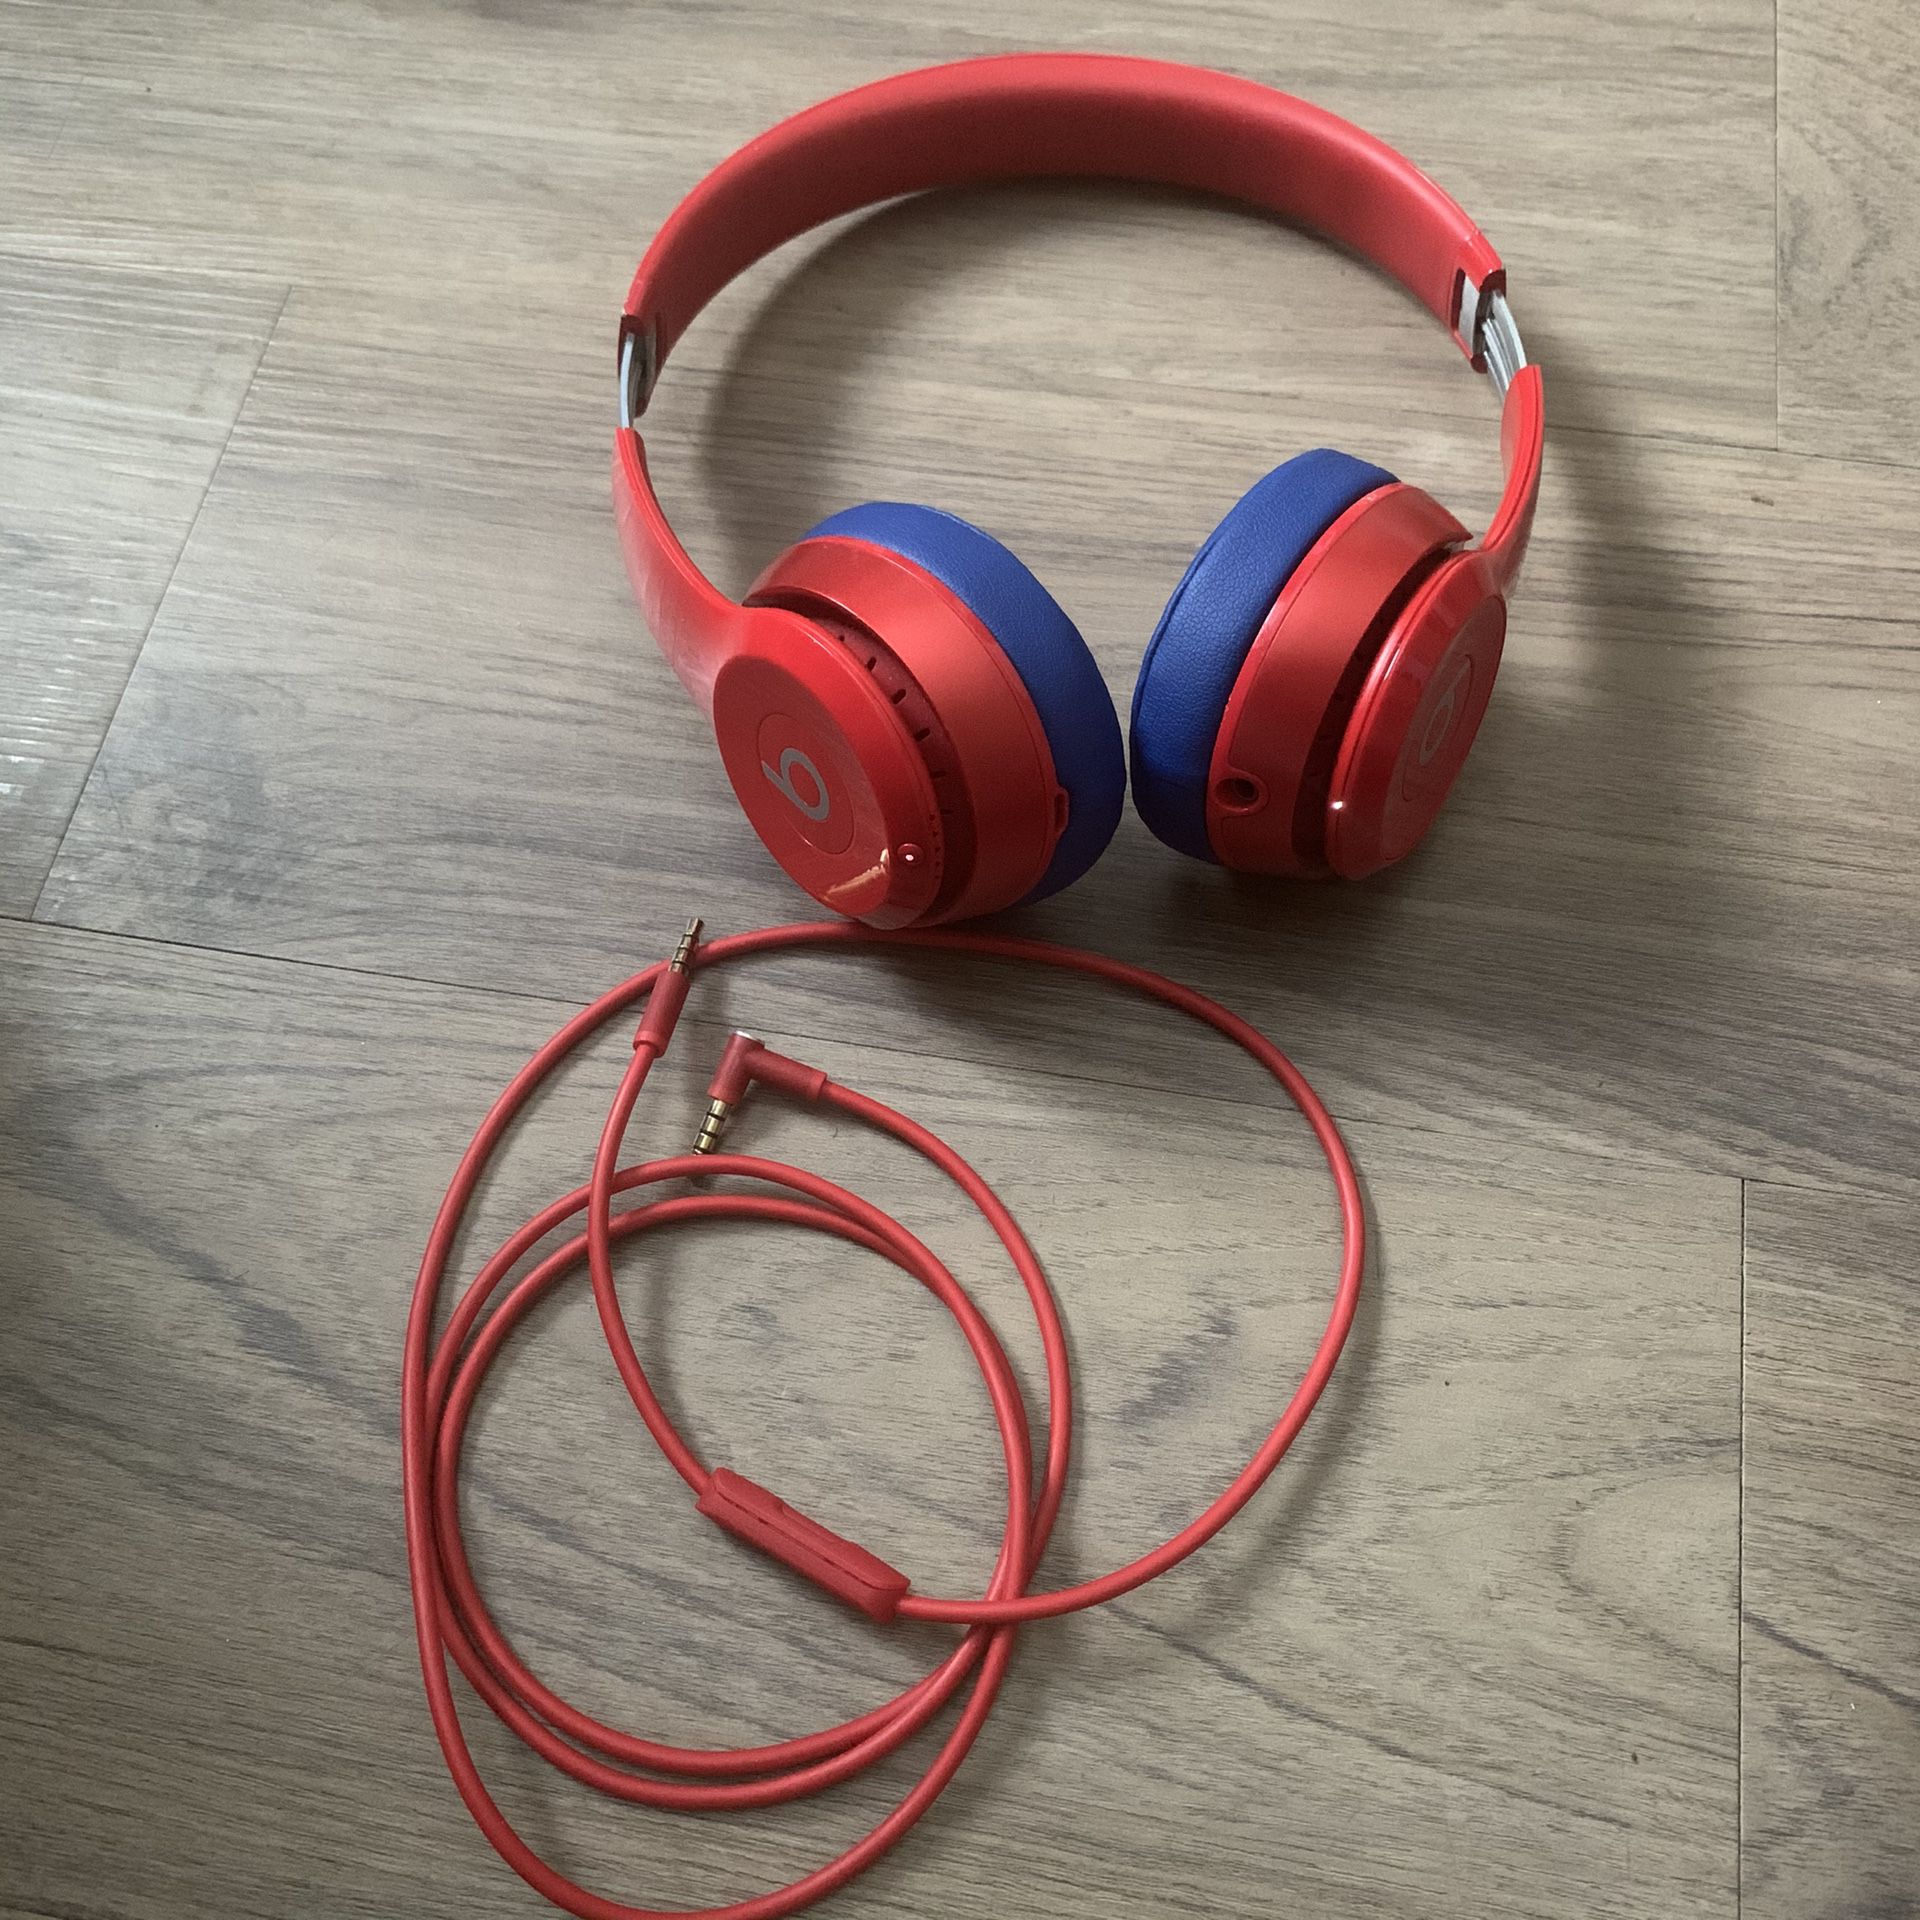 Beats Solo 2 Wireless Headphones by Dre